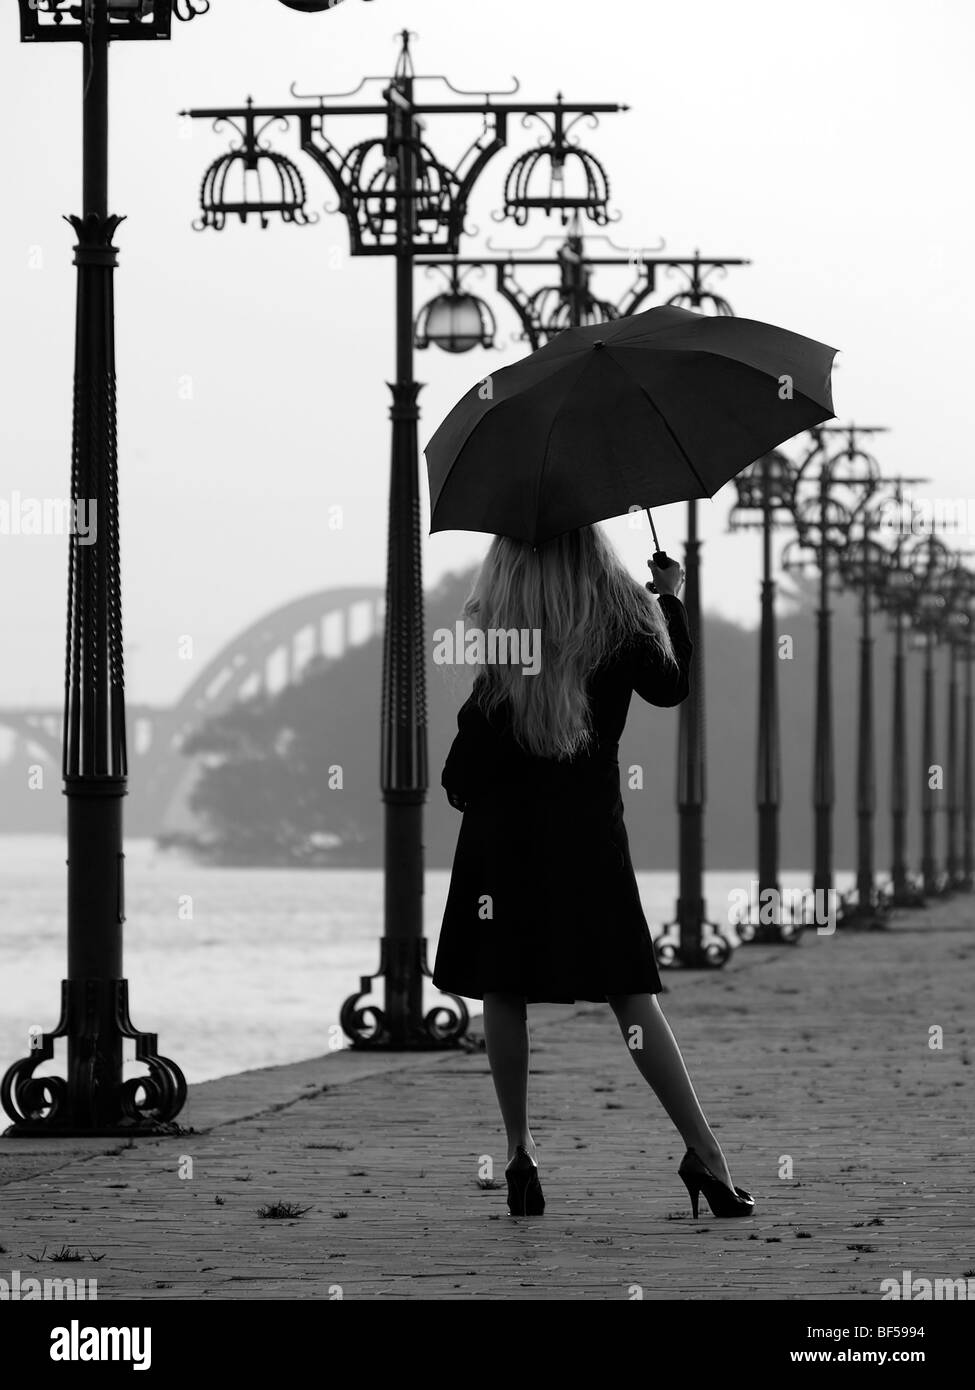 Señora con paraguas Imágenes de stock en blanco y negro - Alamy